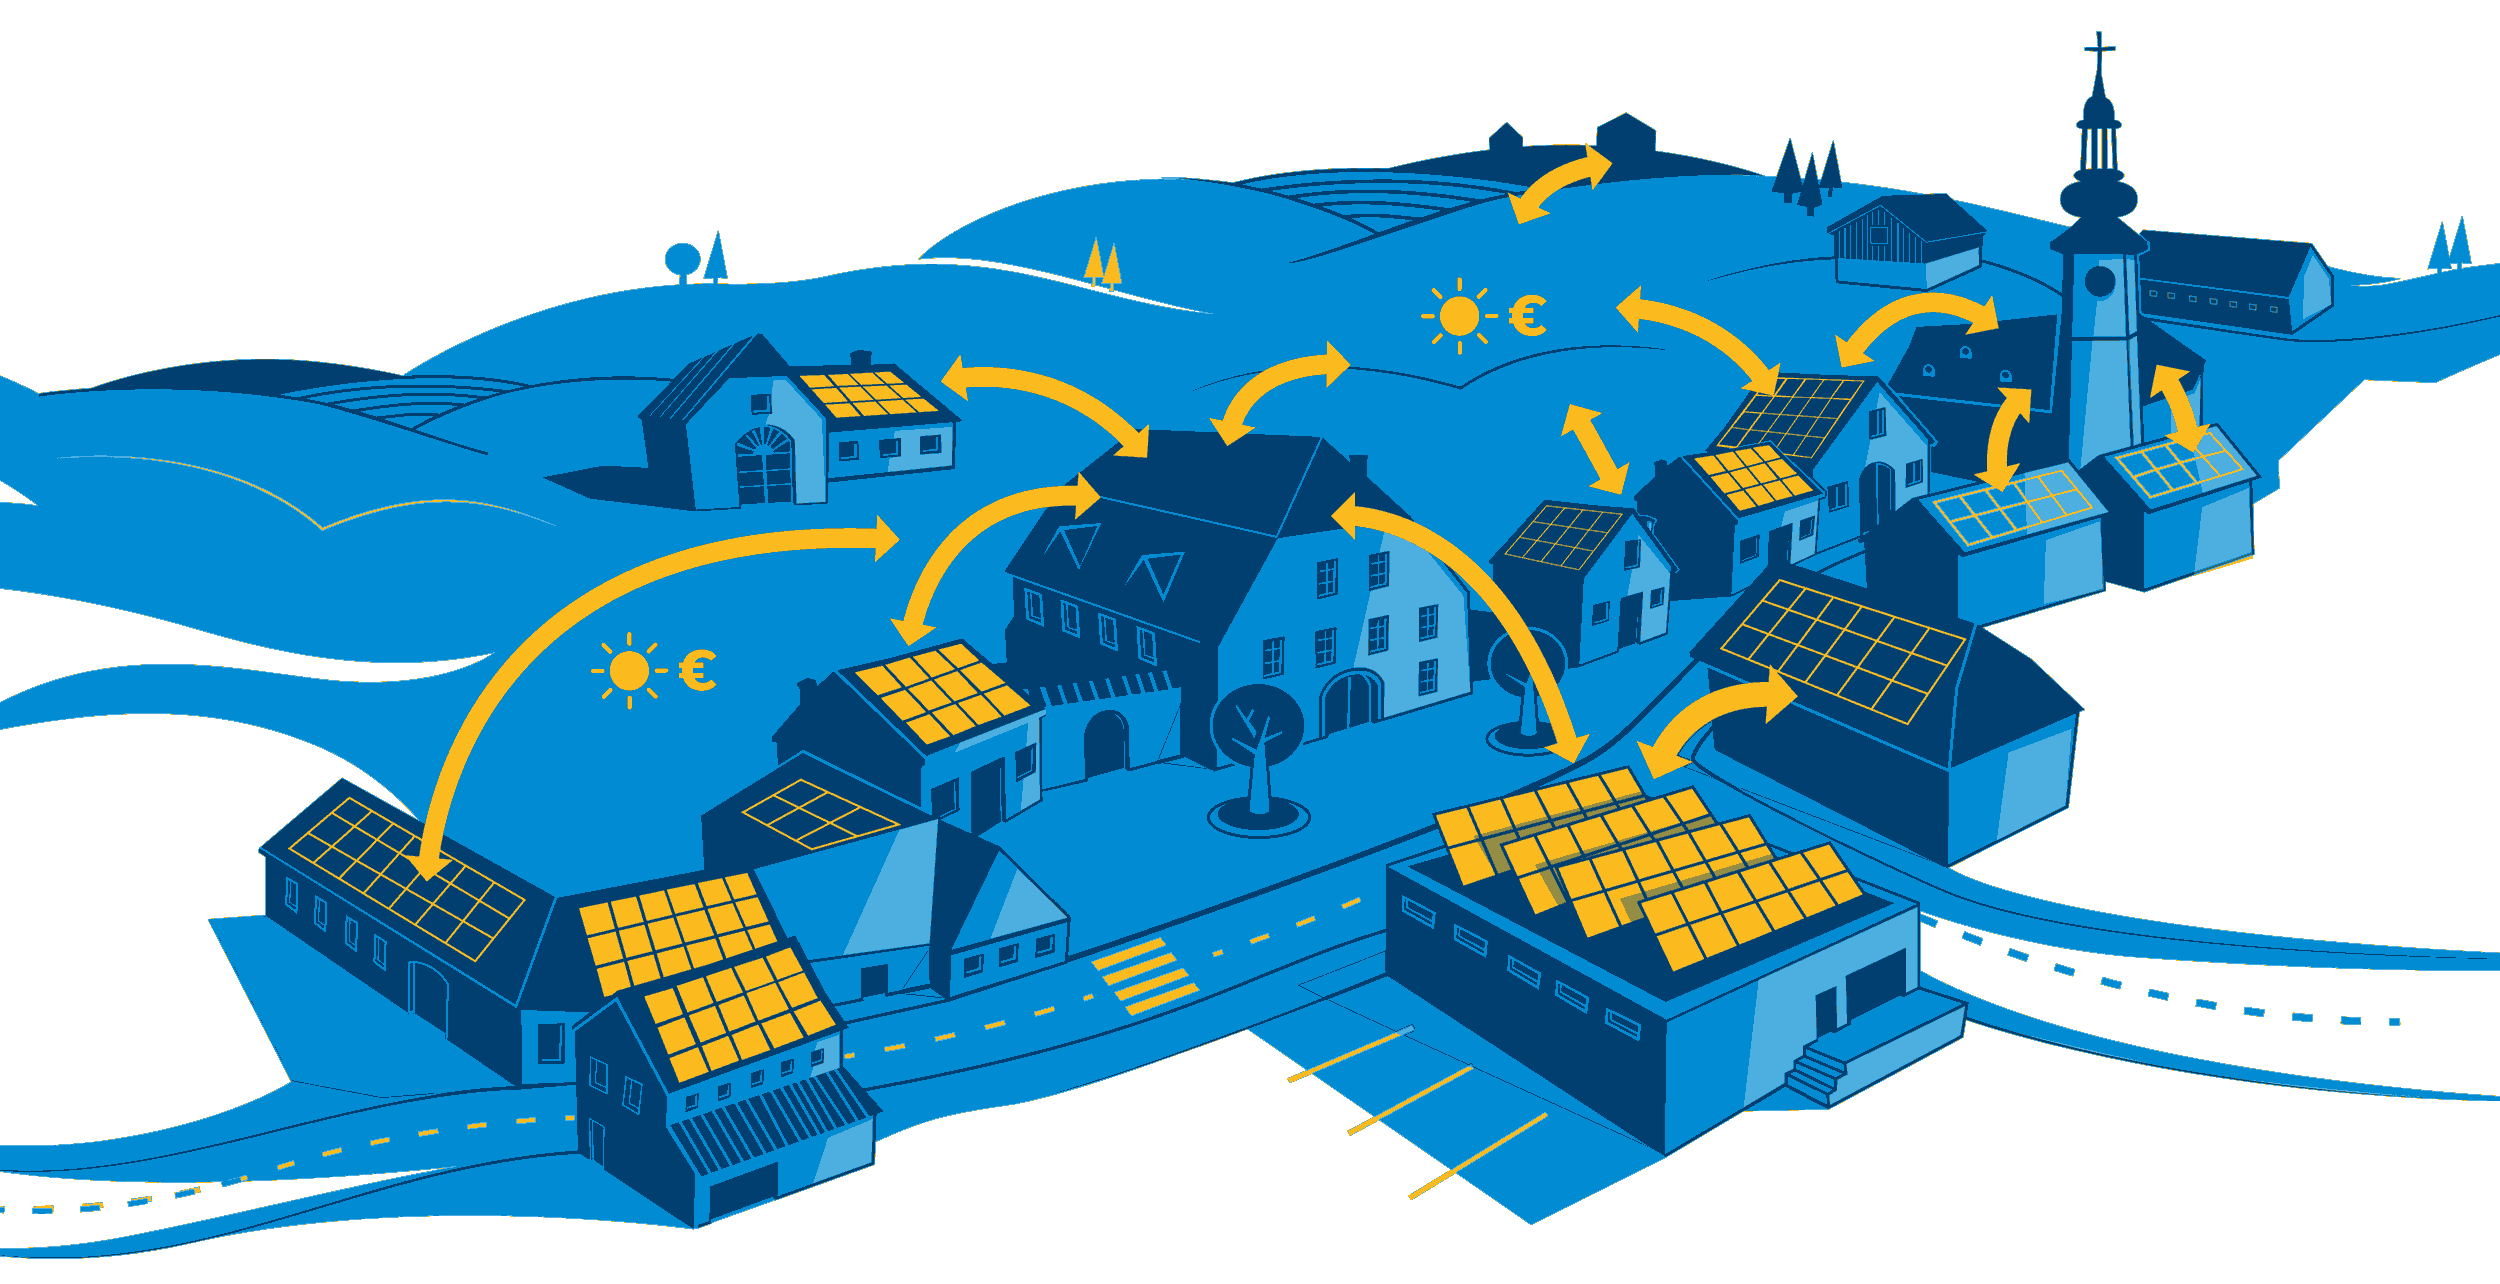 Die Grafik zeigt in Blautönen gehalten eine Dorfkulisse mit PV Dächern auf Häusern und Betriebsgebäuden.